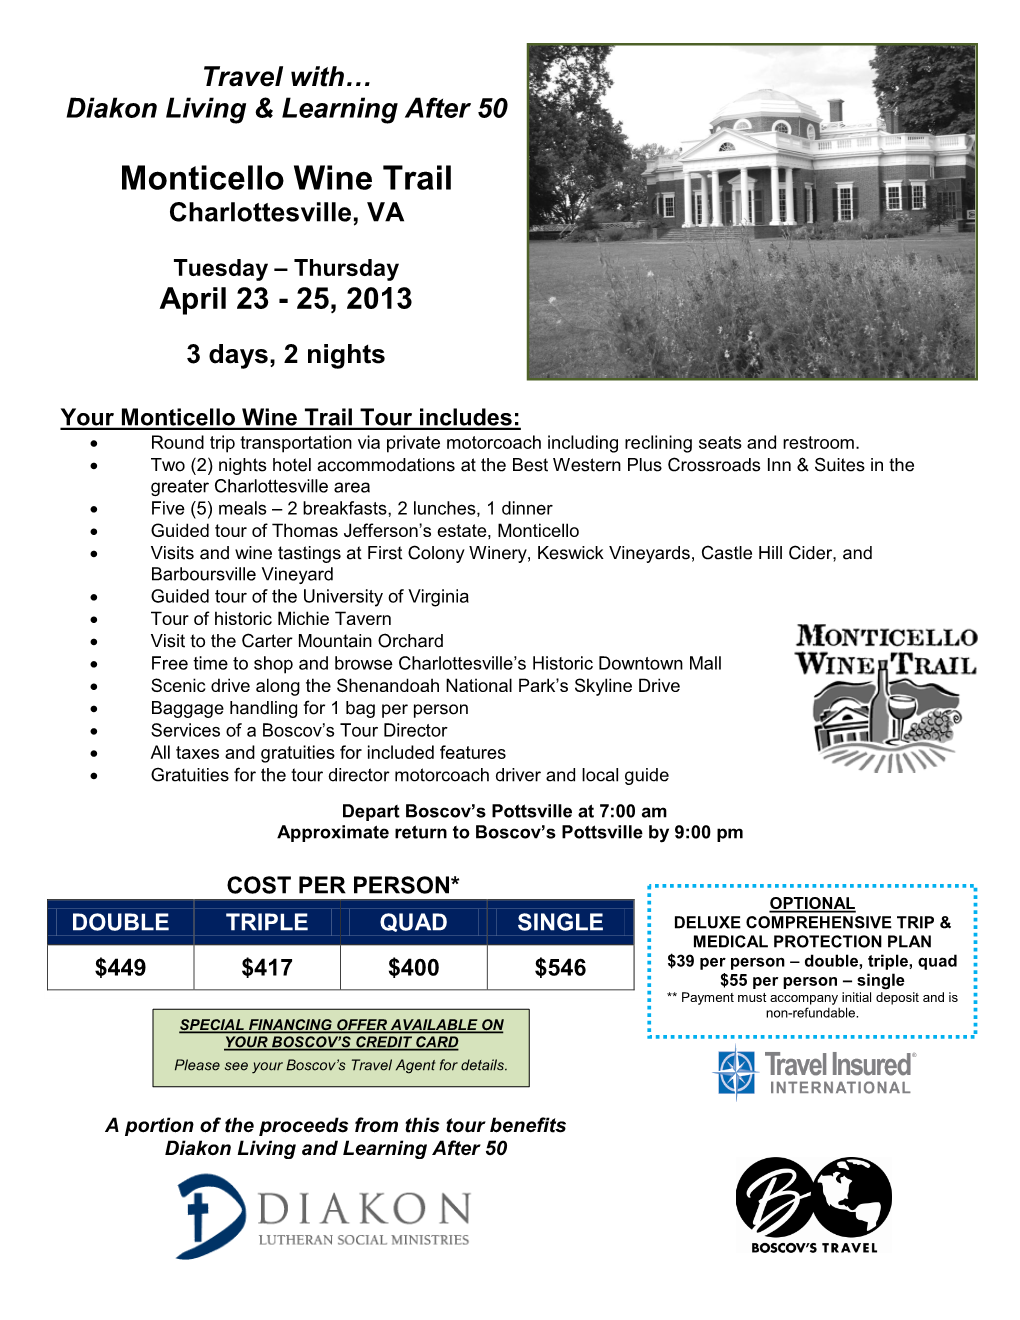 Monticello Wine Trail Charlottesville, VA